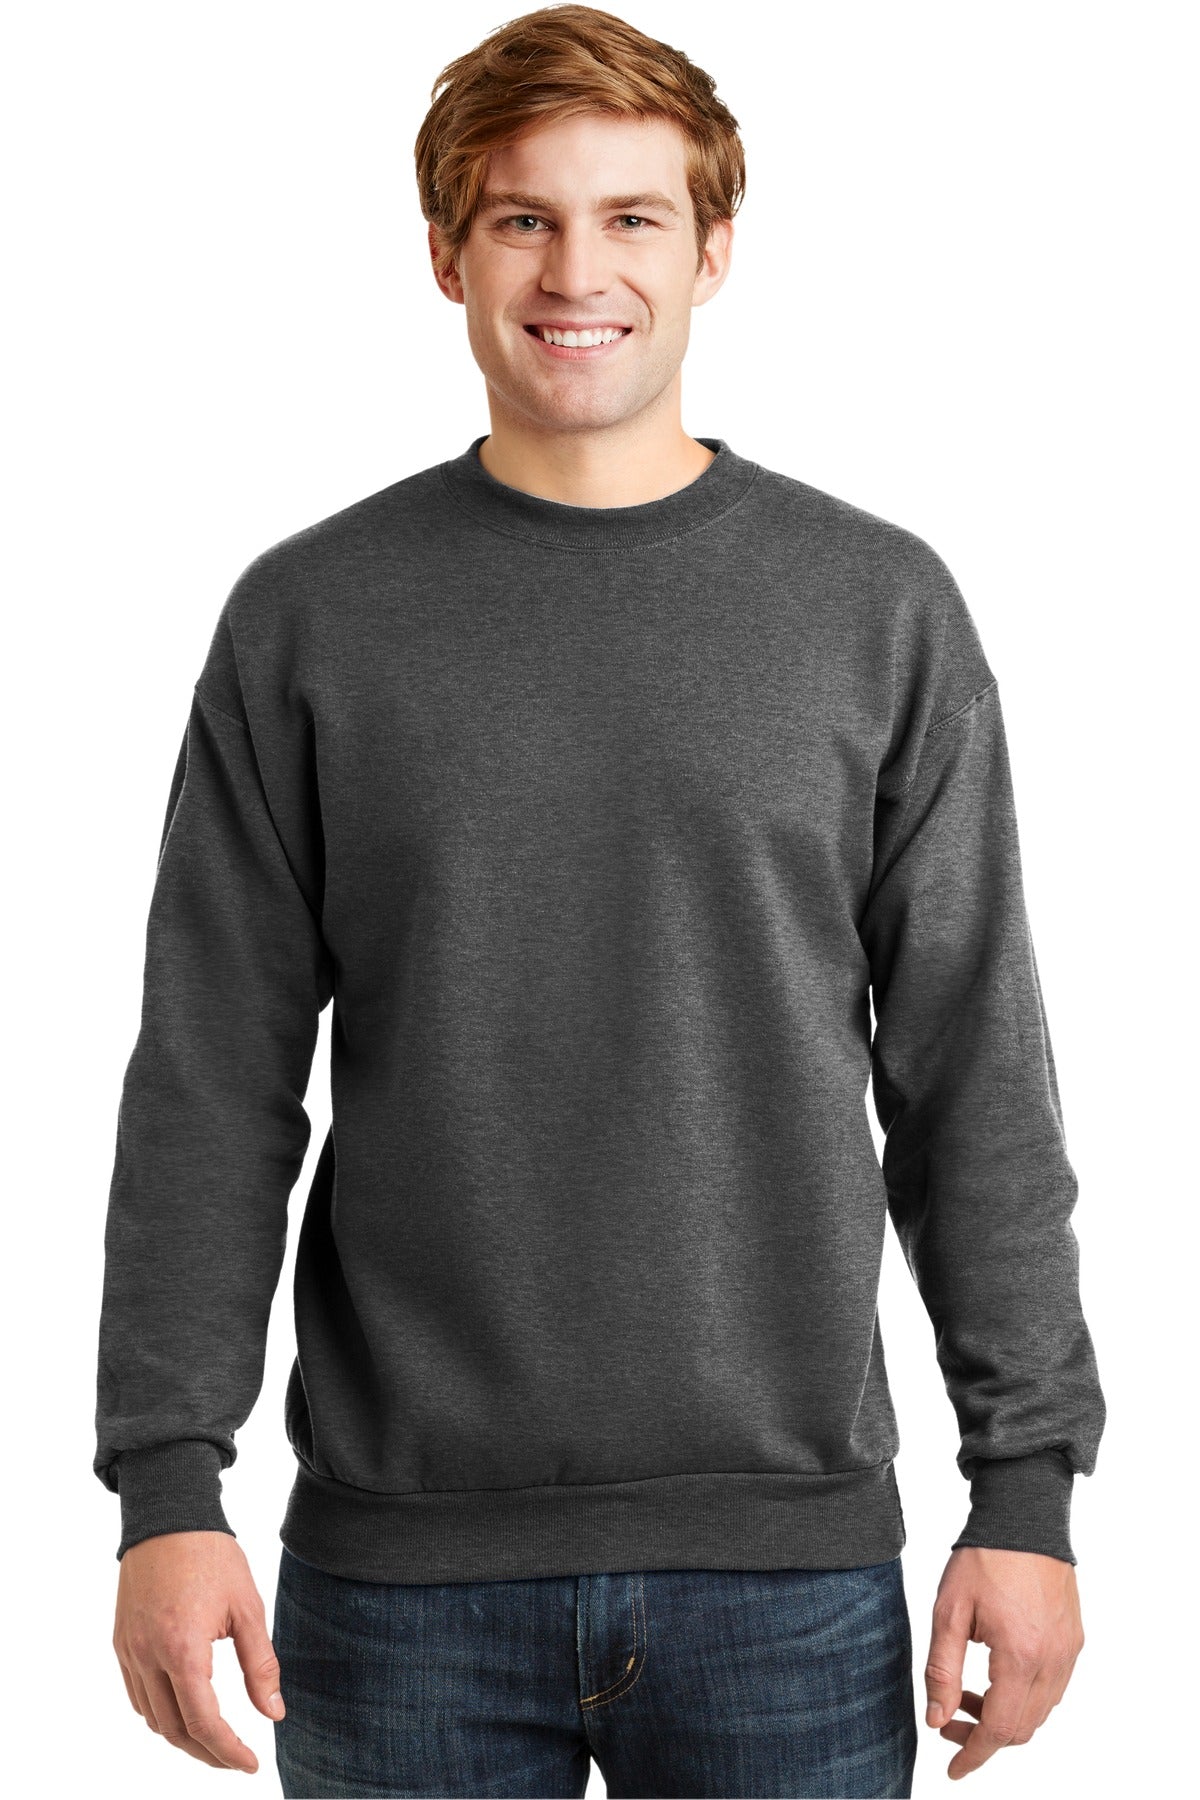 Sweatshirts/Fleece Charcoal Heather Hanes